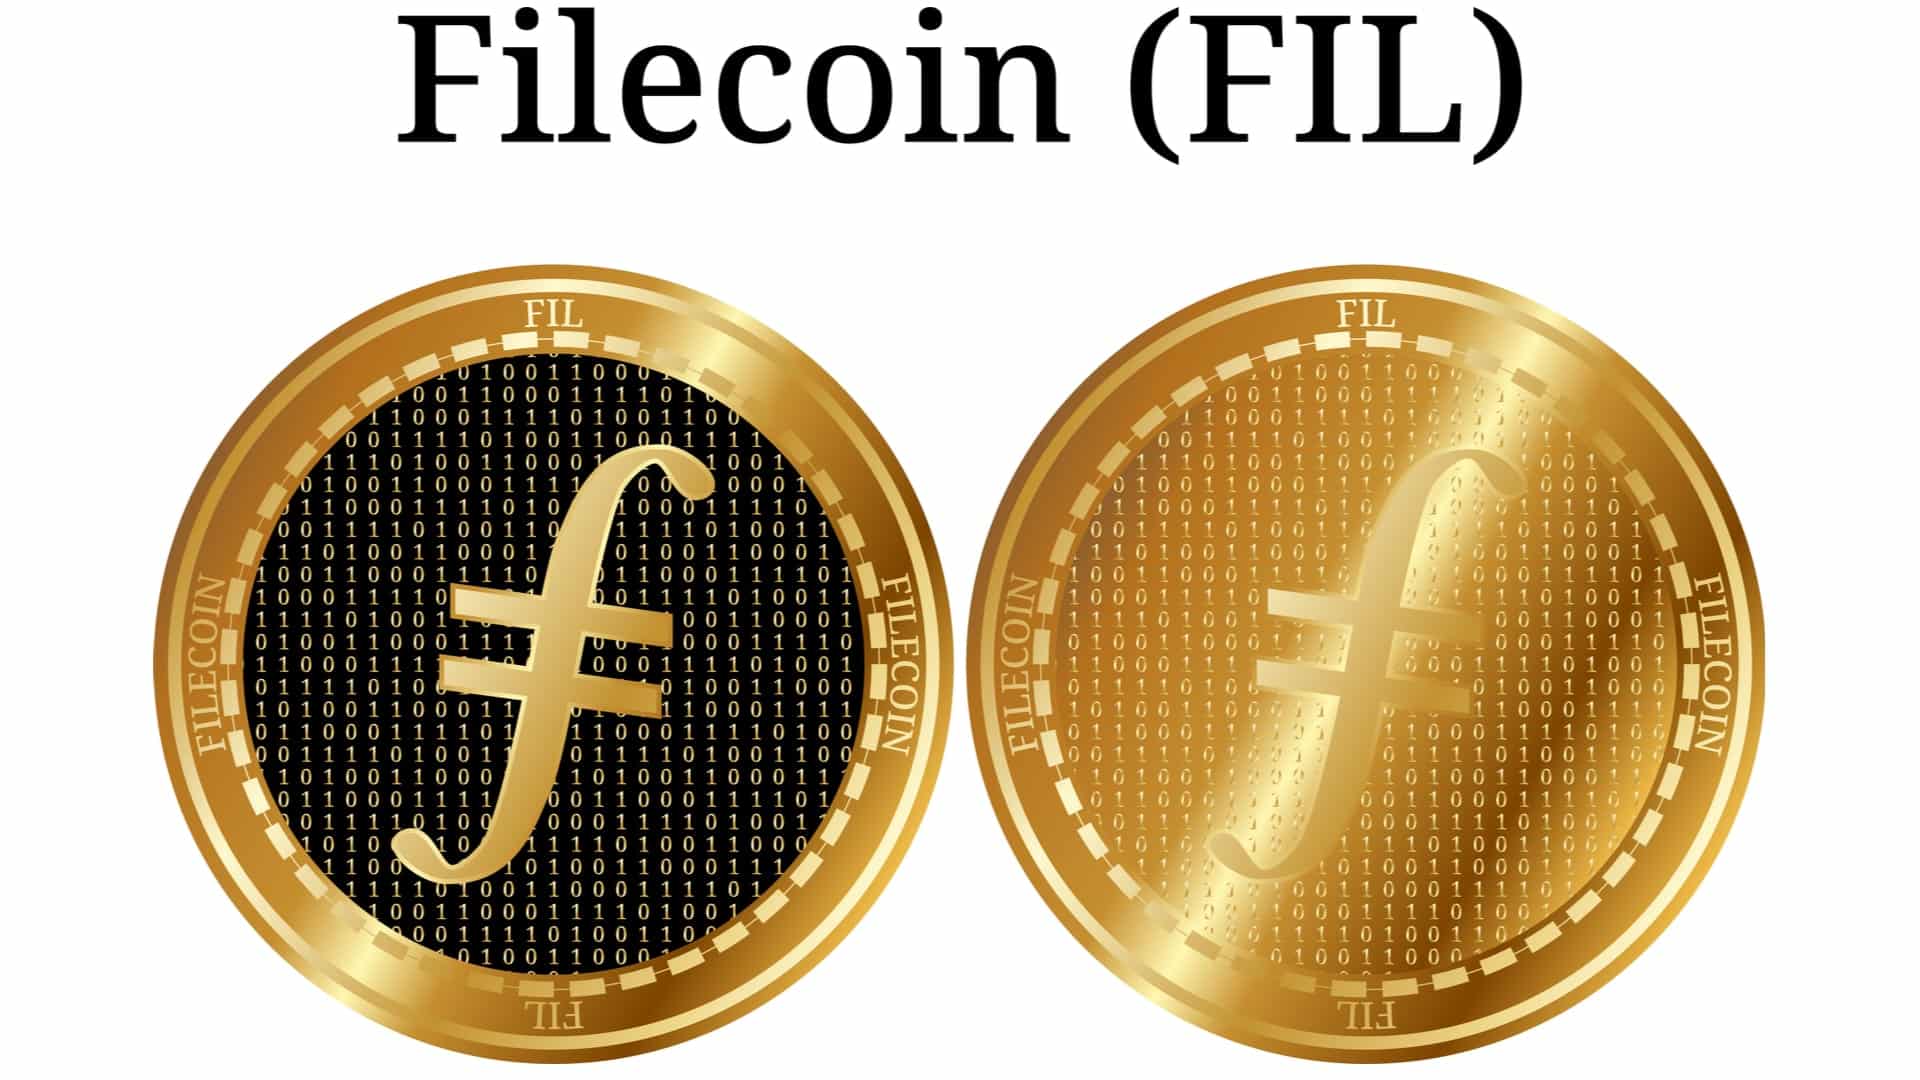 Filecoin ICO - 200 miliónov za 60 minút!